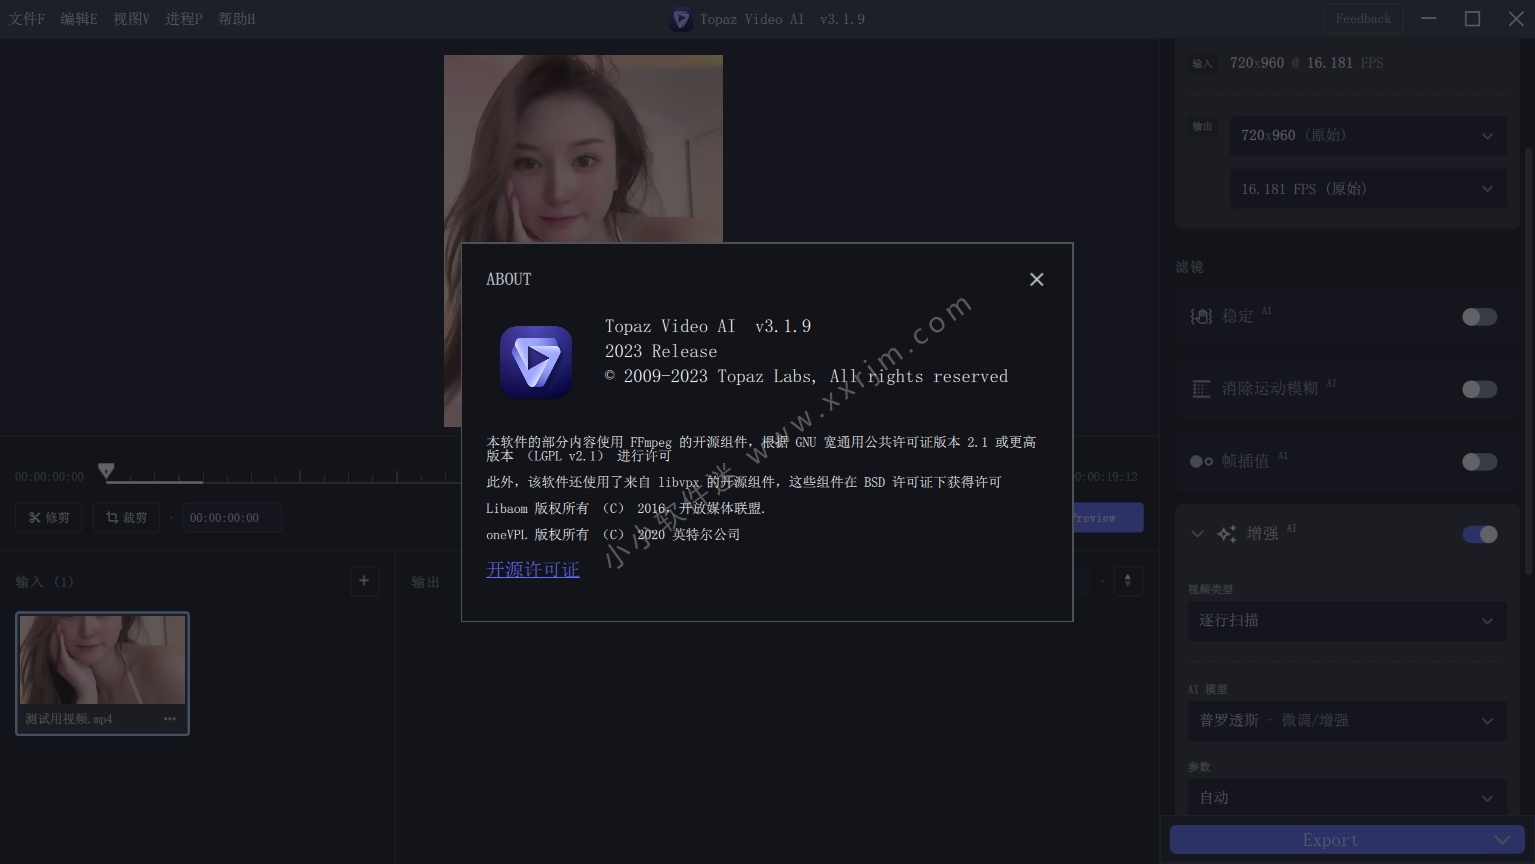 黄玉视频 Topaz Video AI 3.1.9 免安装中文绿色版+117G最全离线模型